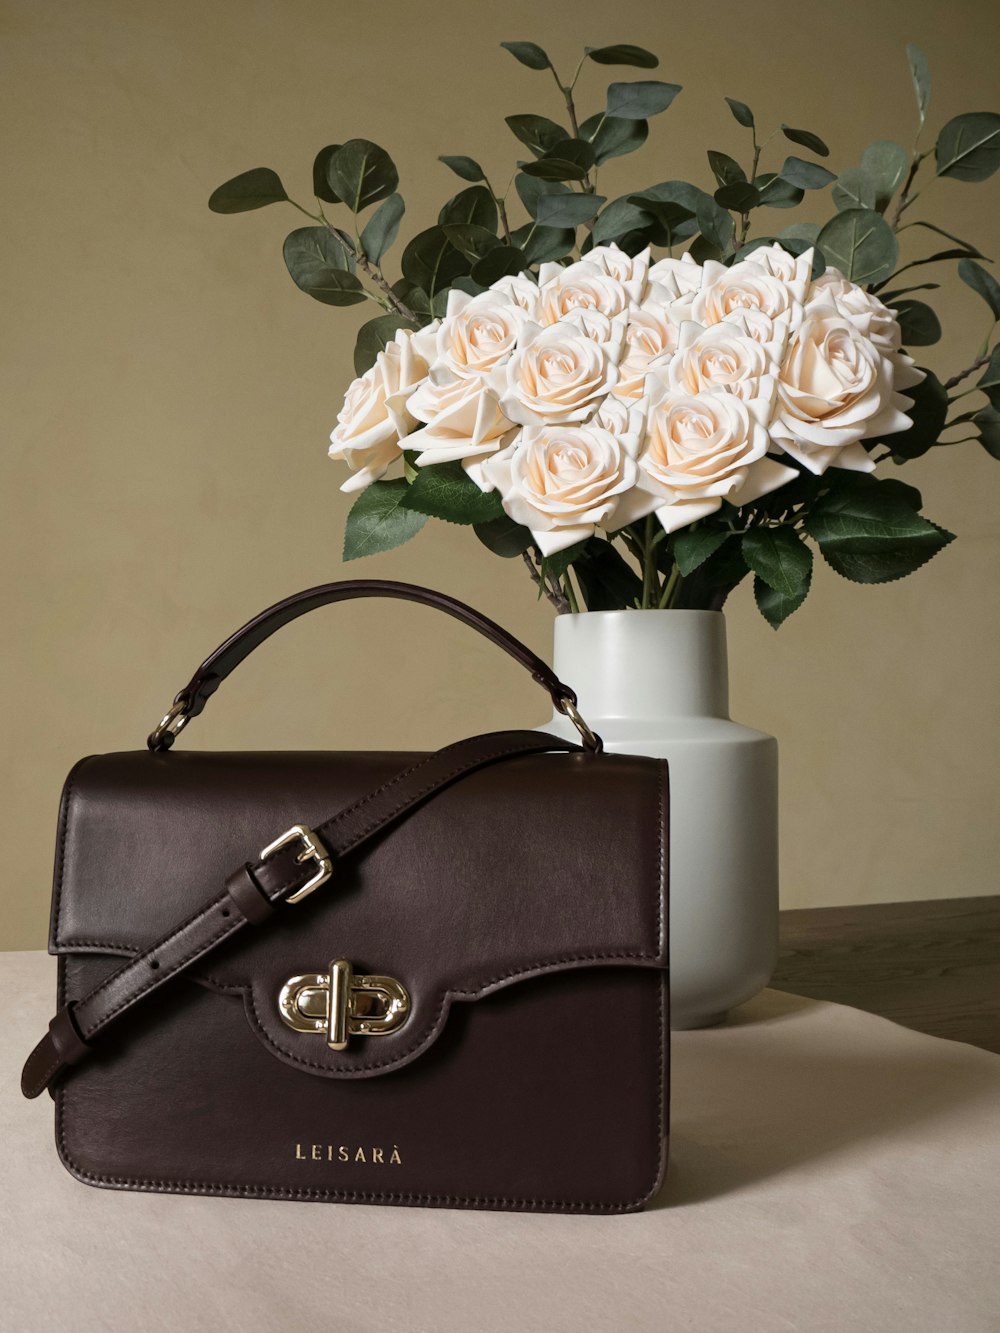 brown leather handbag beside white flower vase